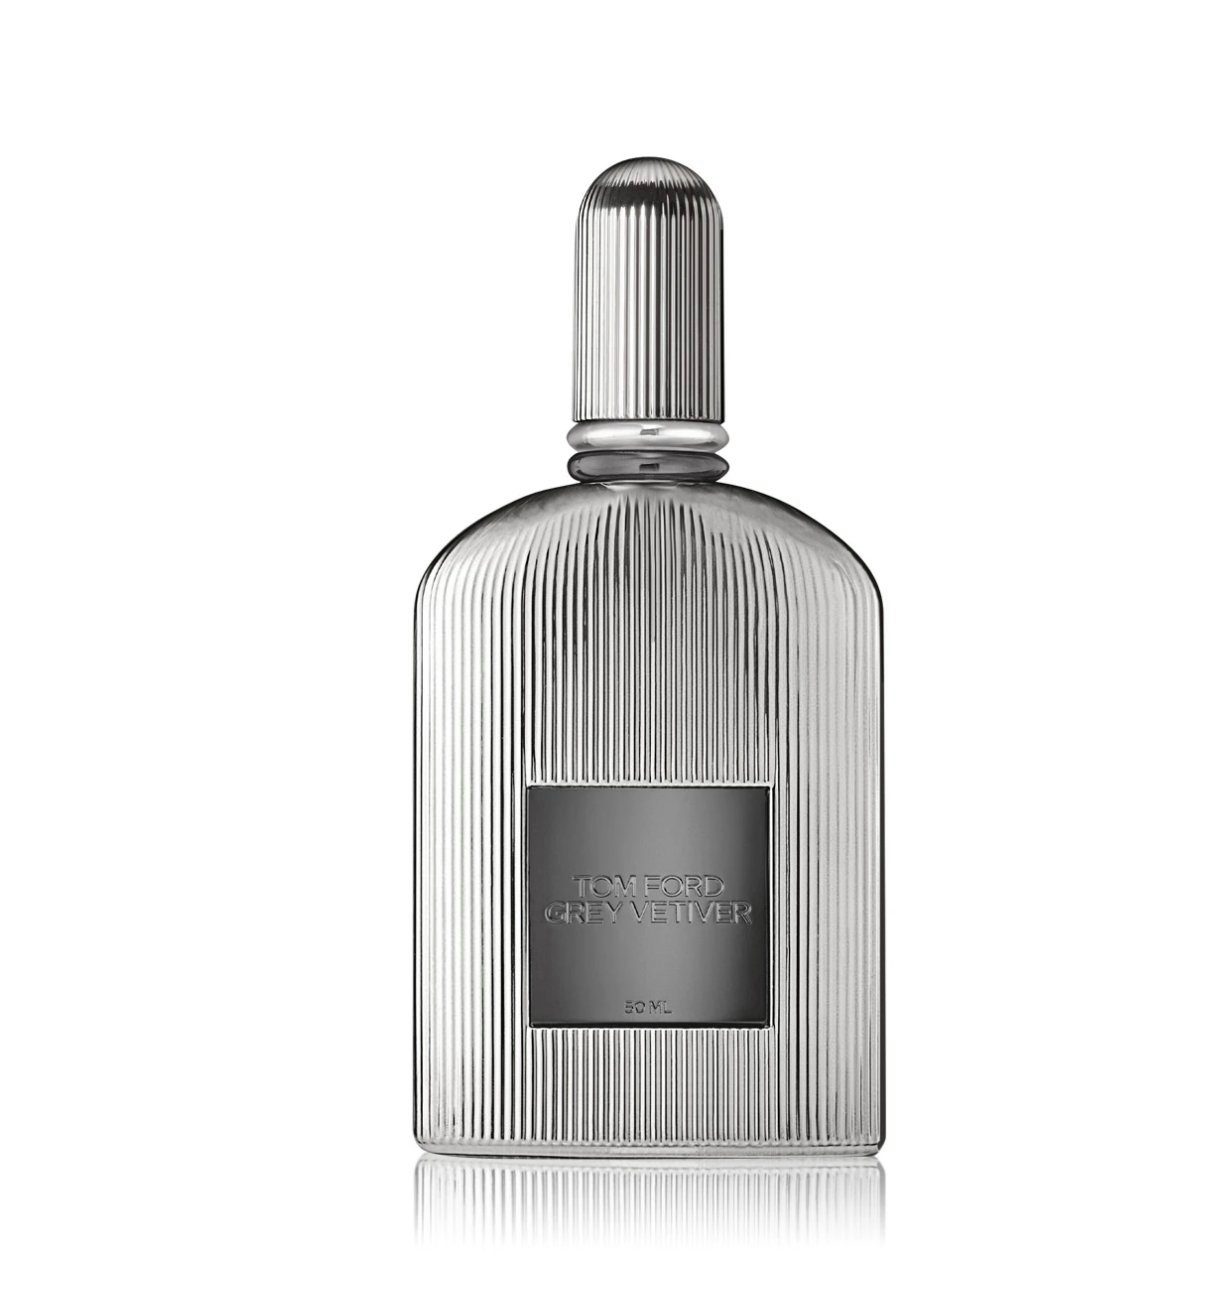 Ford Grey Parfum de Tom Parfum Eau Ford Tom Vetiver